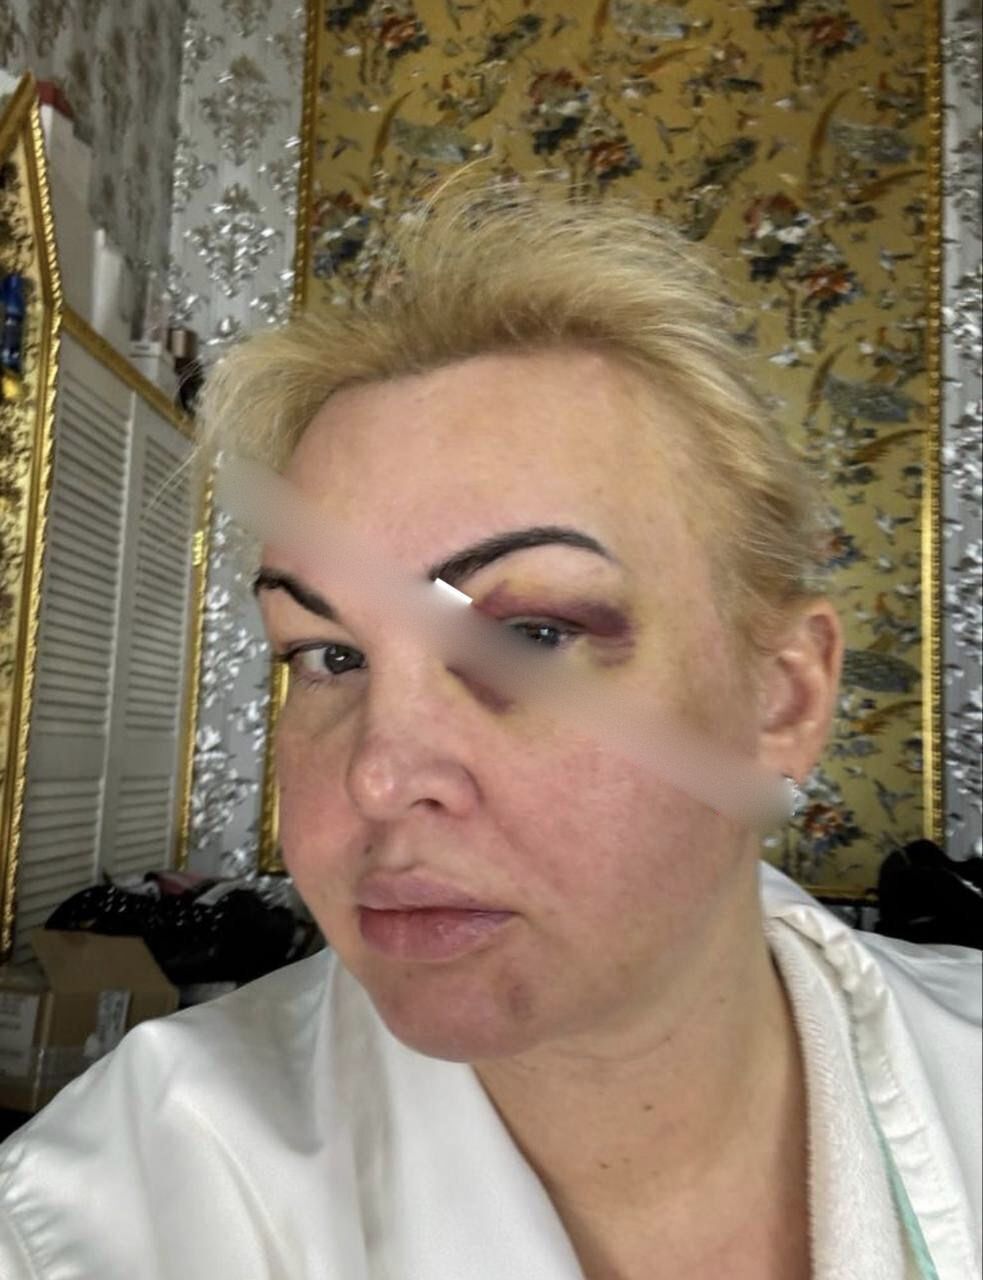 Сеть шокировали фото Камалии в синяках и крови: певица отреагировала